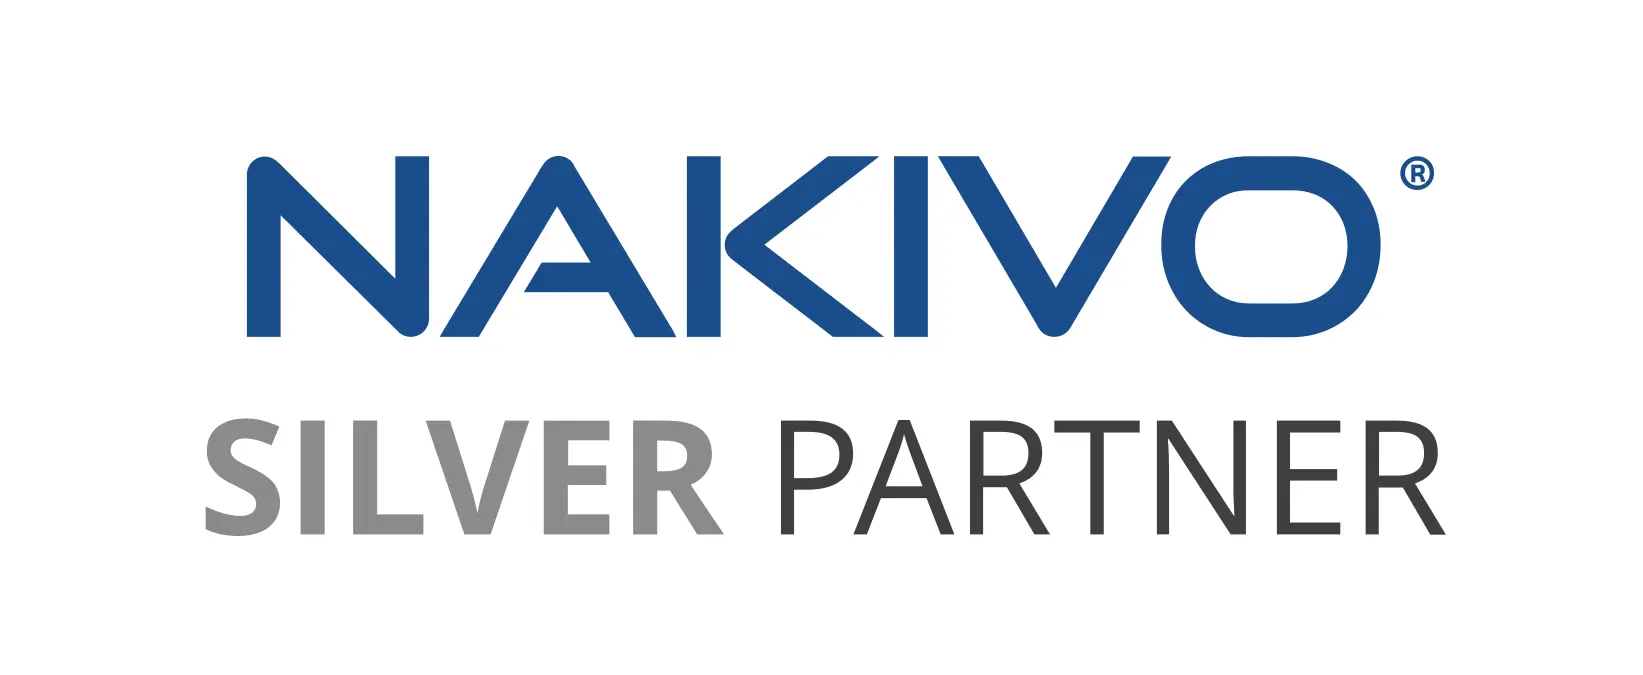 Nakivo-Logo